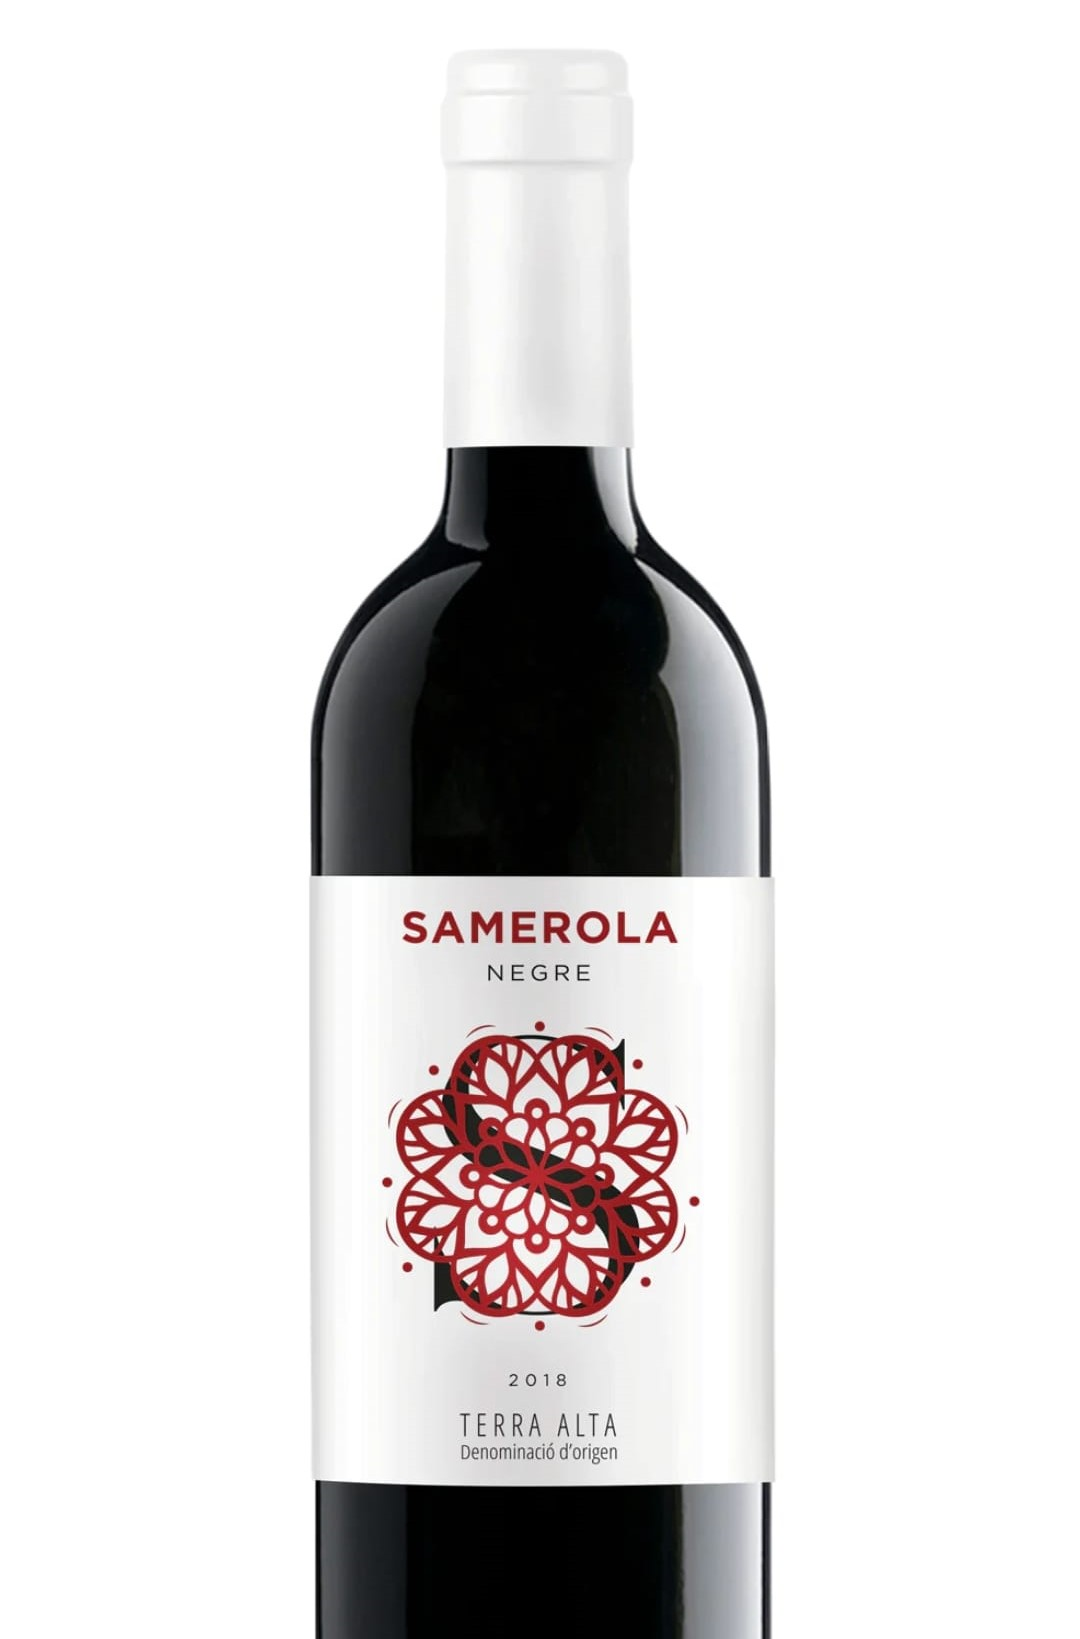 Samerola red wine